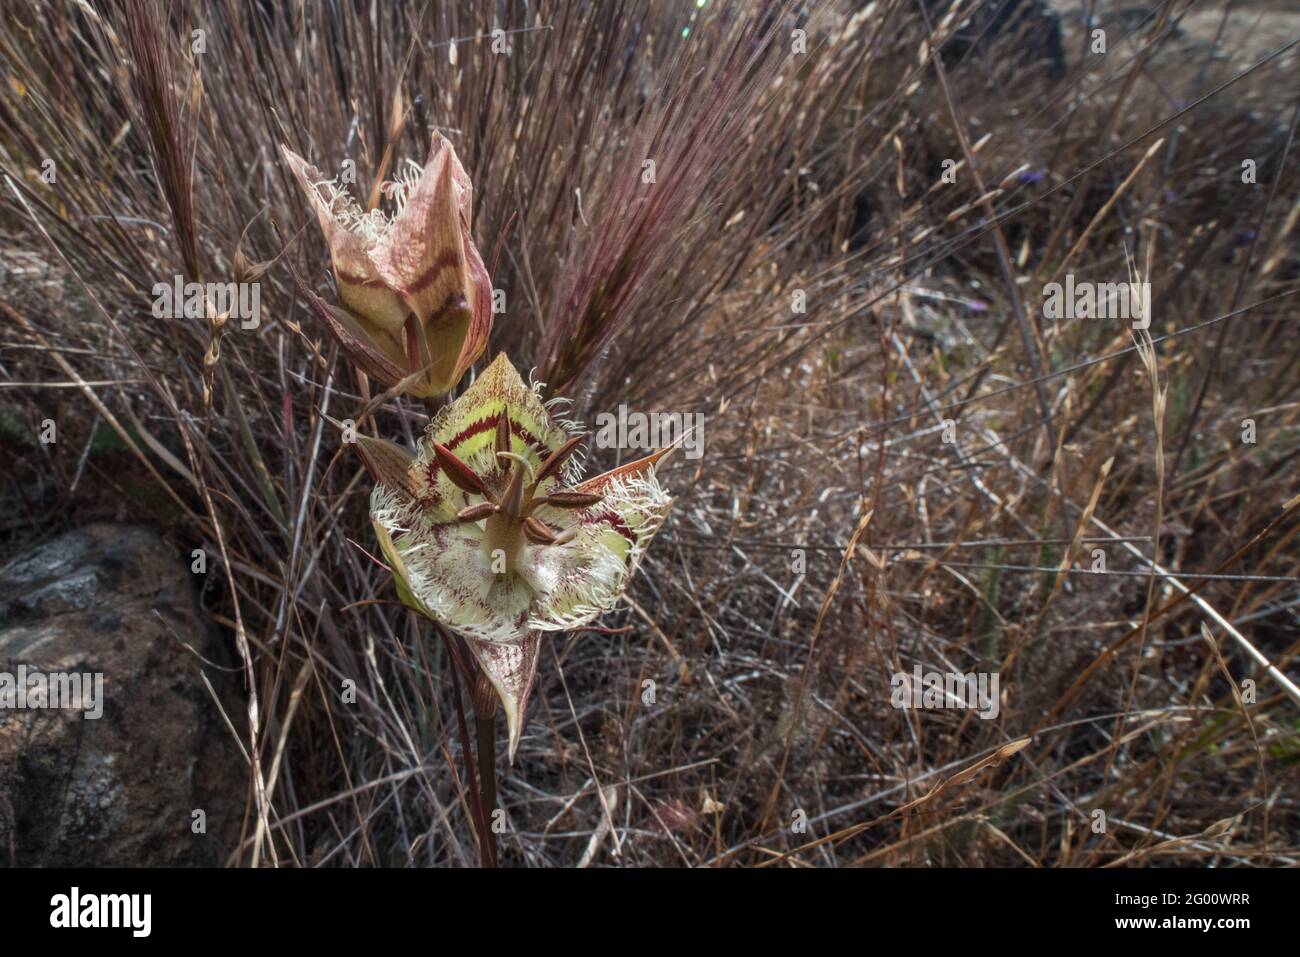 Tiburon Mariposa Lily (Calochortus tiburonensis) a rare plant endemic to Ring Mountain preserve, in the San Francsisco Bay area of California. Stock Photo